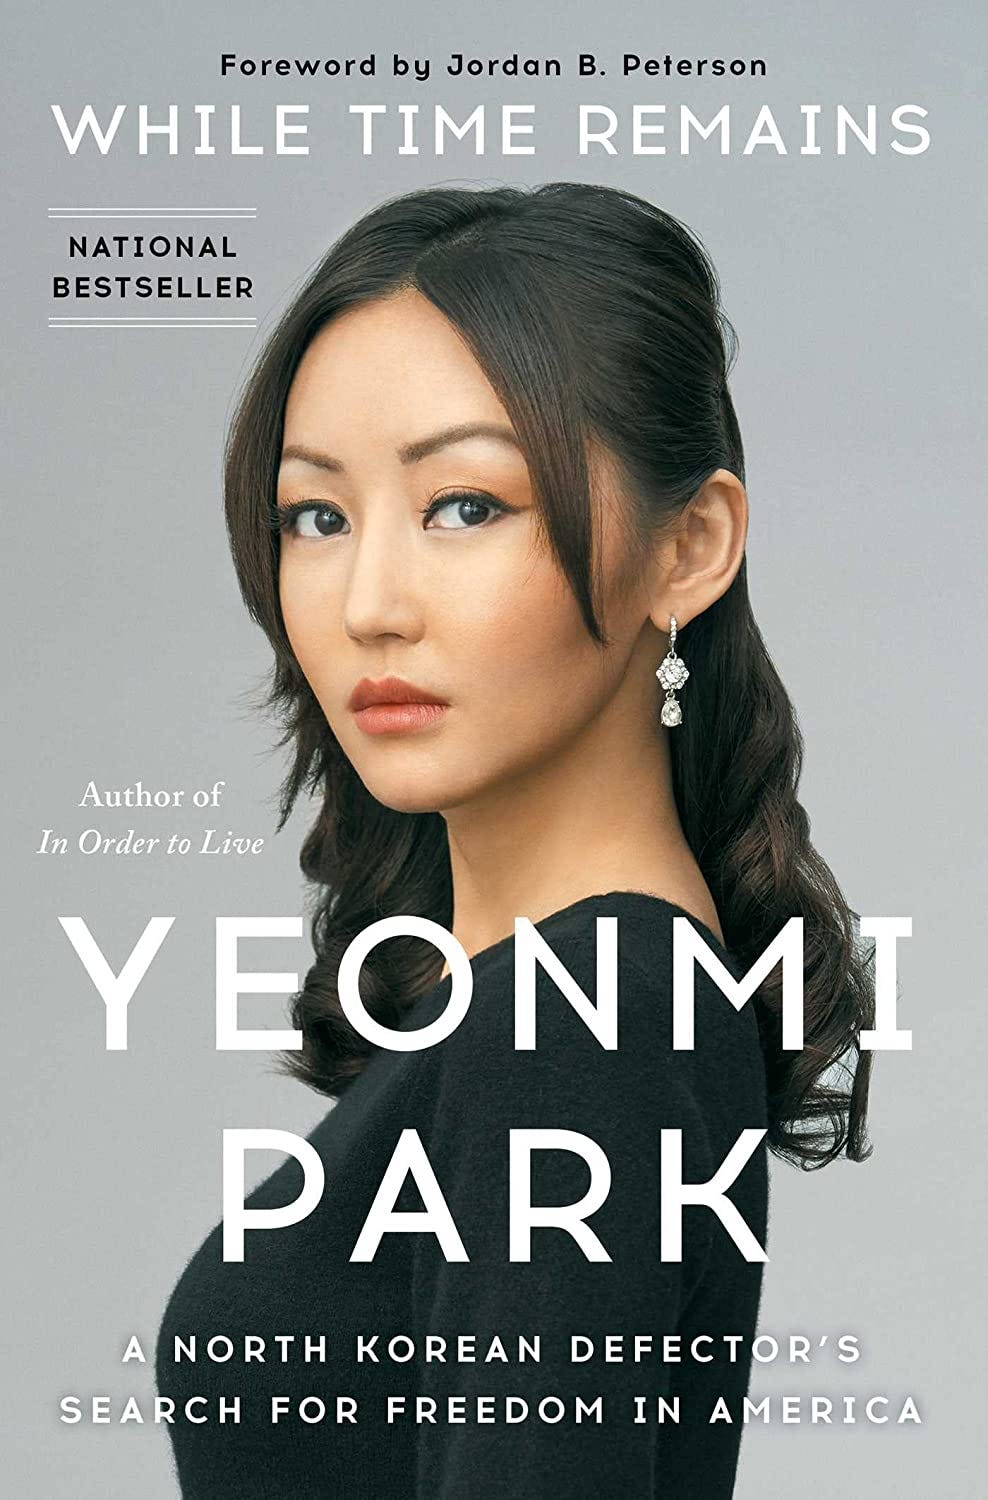 Parkin uusi kirja “Pohjois-Korealaisen loikkarin vapauden etsintä Amerikassa” ei ole vielä saatavilla Suomen kielellä, mutta sen voi tilata englanninkielisenä versiona Amazonista tästä.